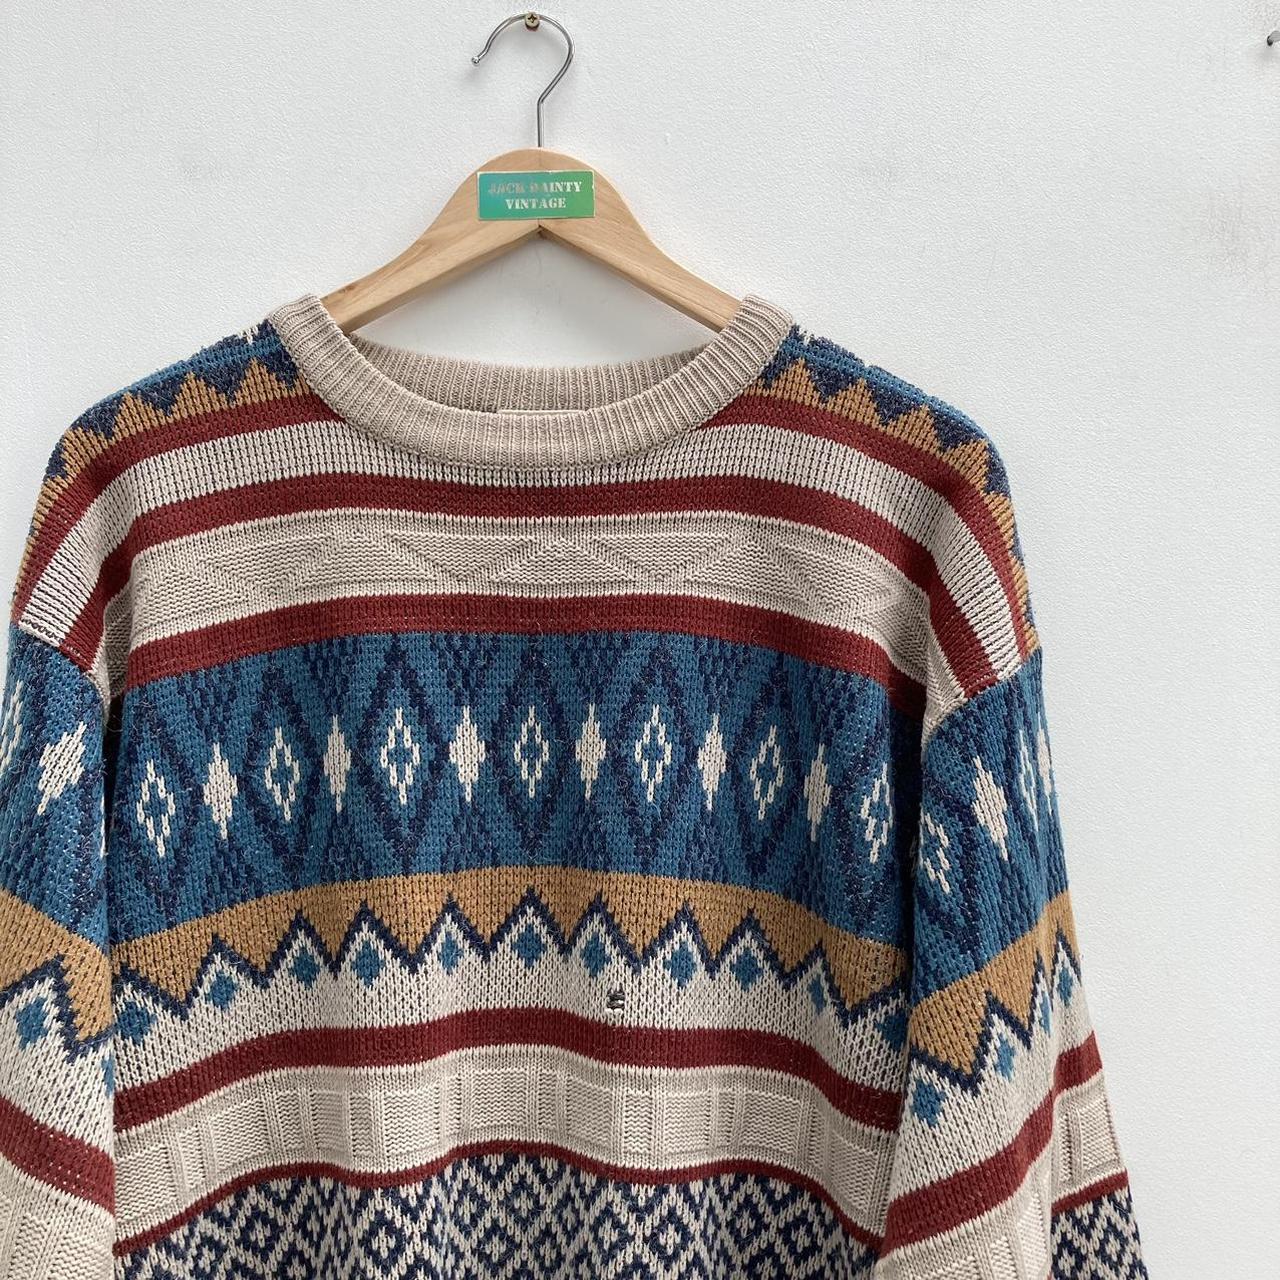 Vintage grunge patterned knitted jumper The price... - Depop